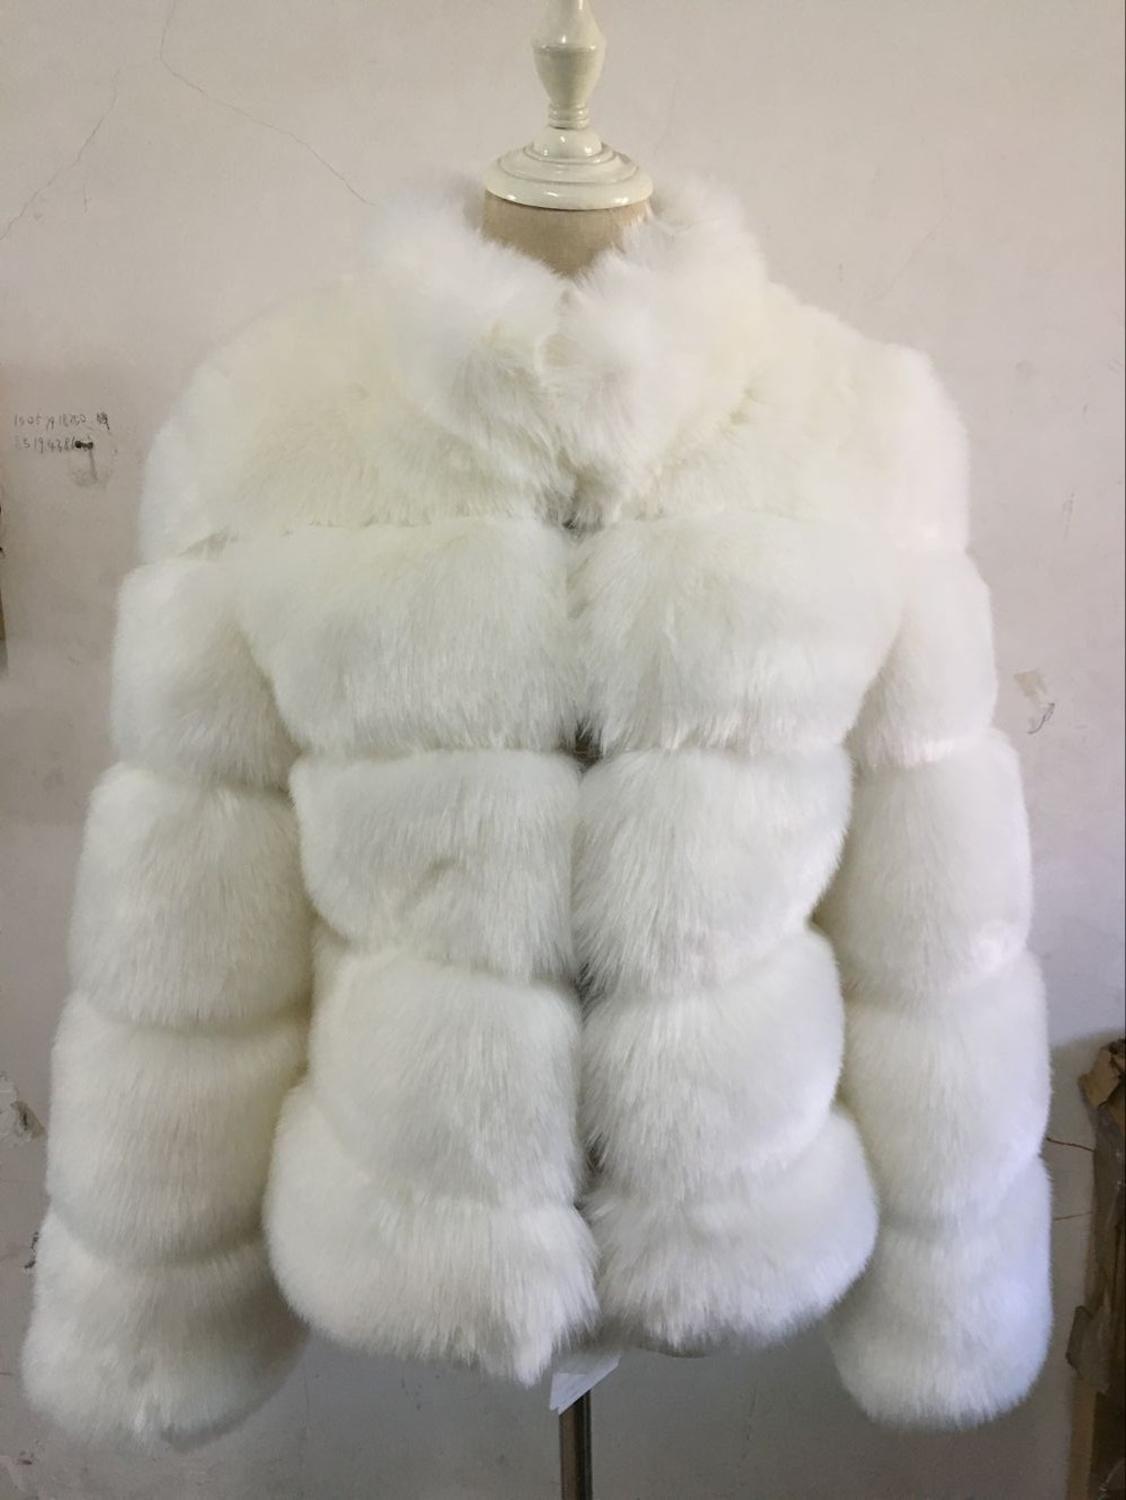 Изображение товара: Savabien 2019 Зимняя мода искусственный Лисий мех пальто для женщин с воротником-стойкой роскошные толстые теплые пушистые куртки и пальто из искусственного меха розовый мех